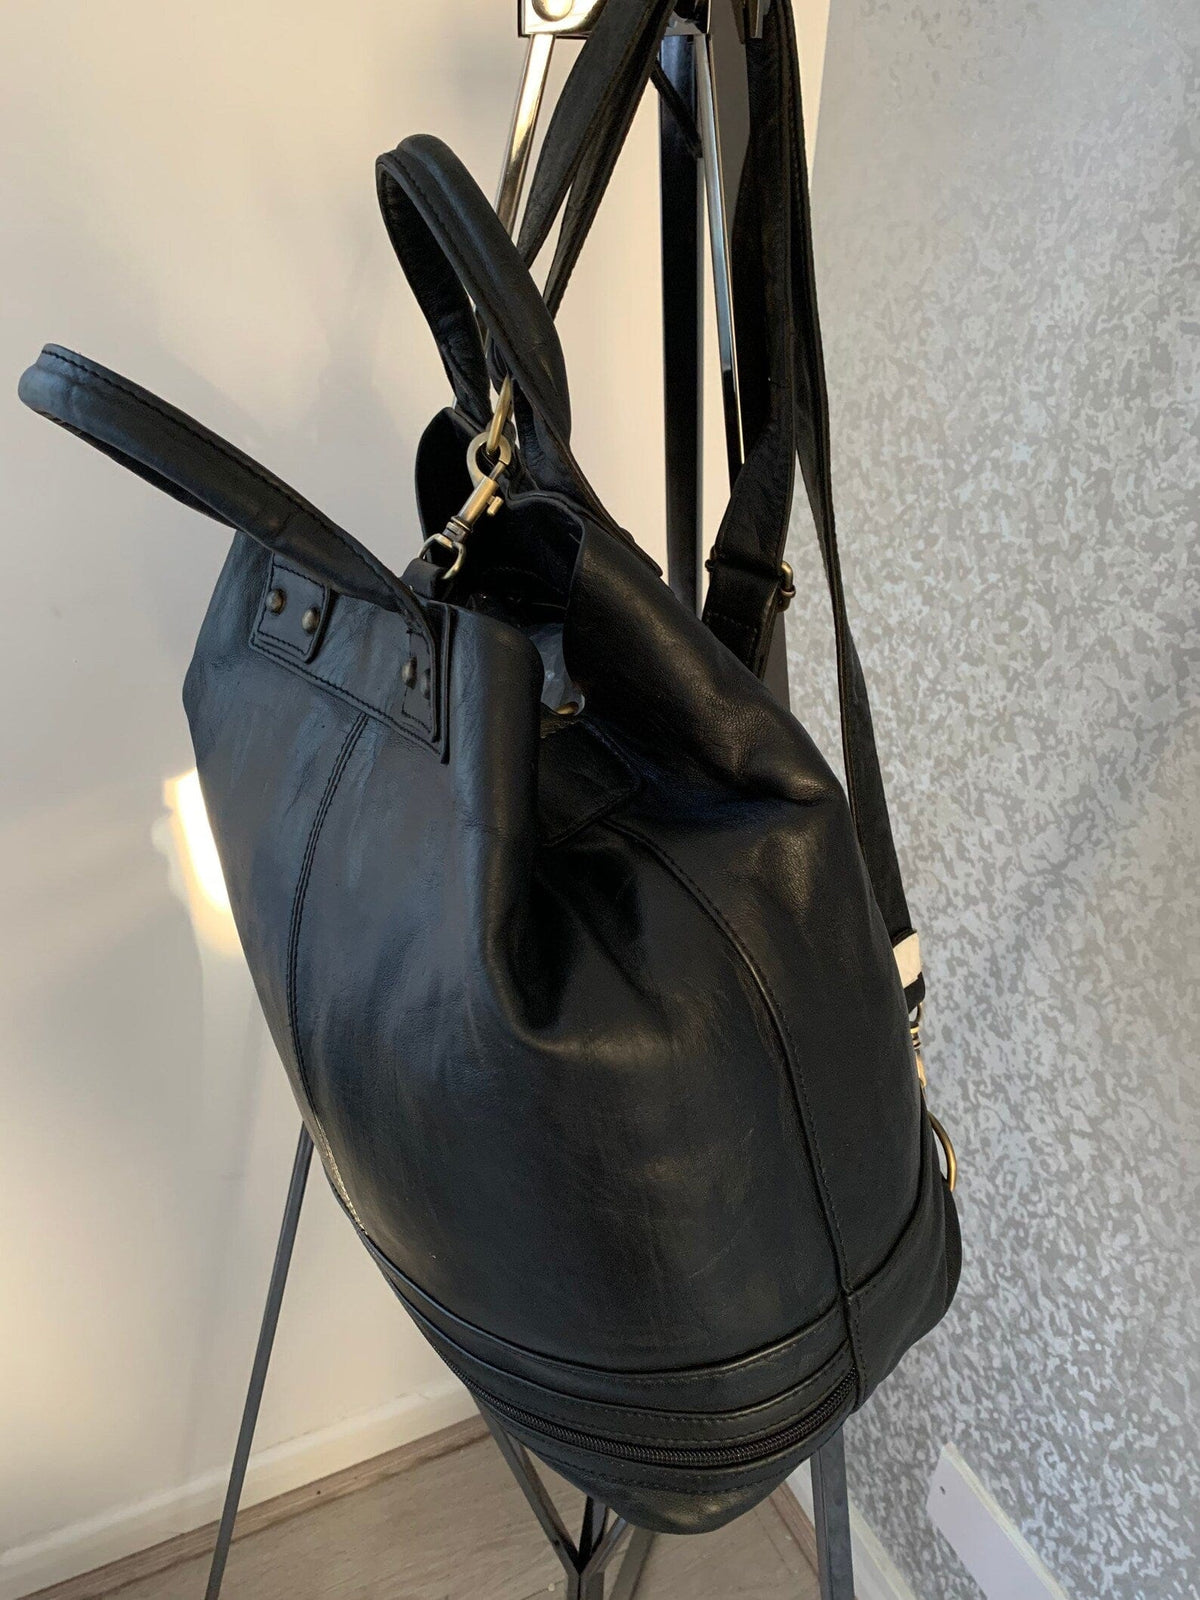 Handmade Leather Bucket Bag-Safari collection